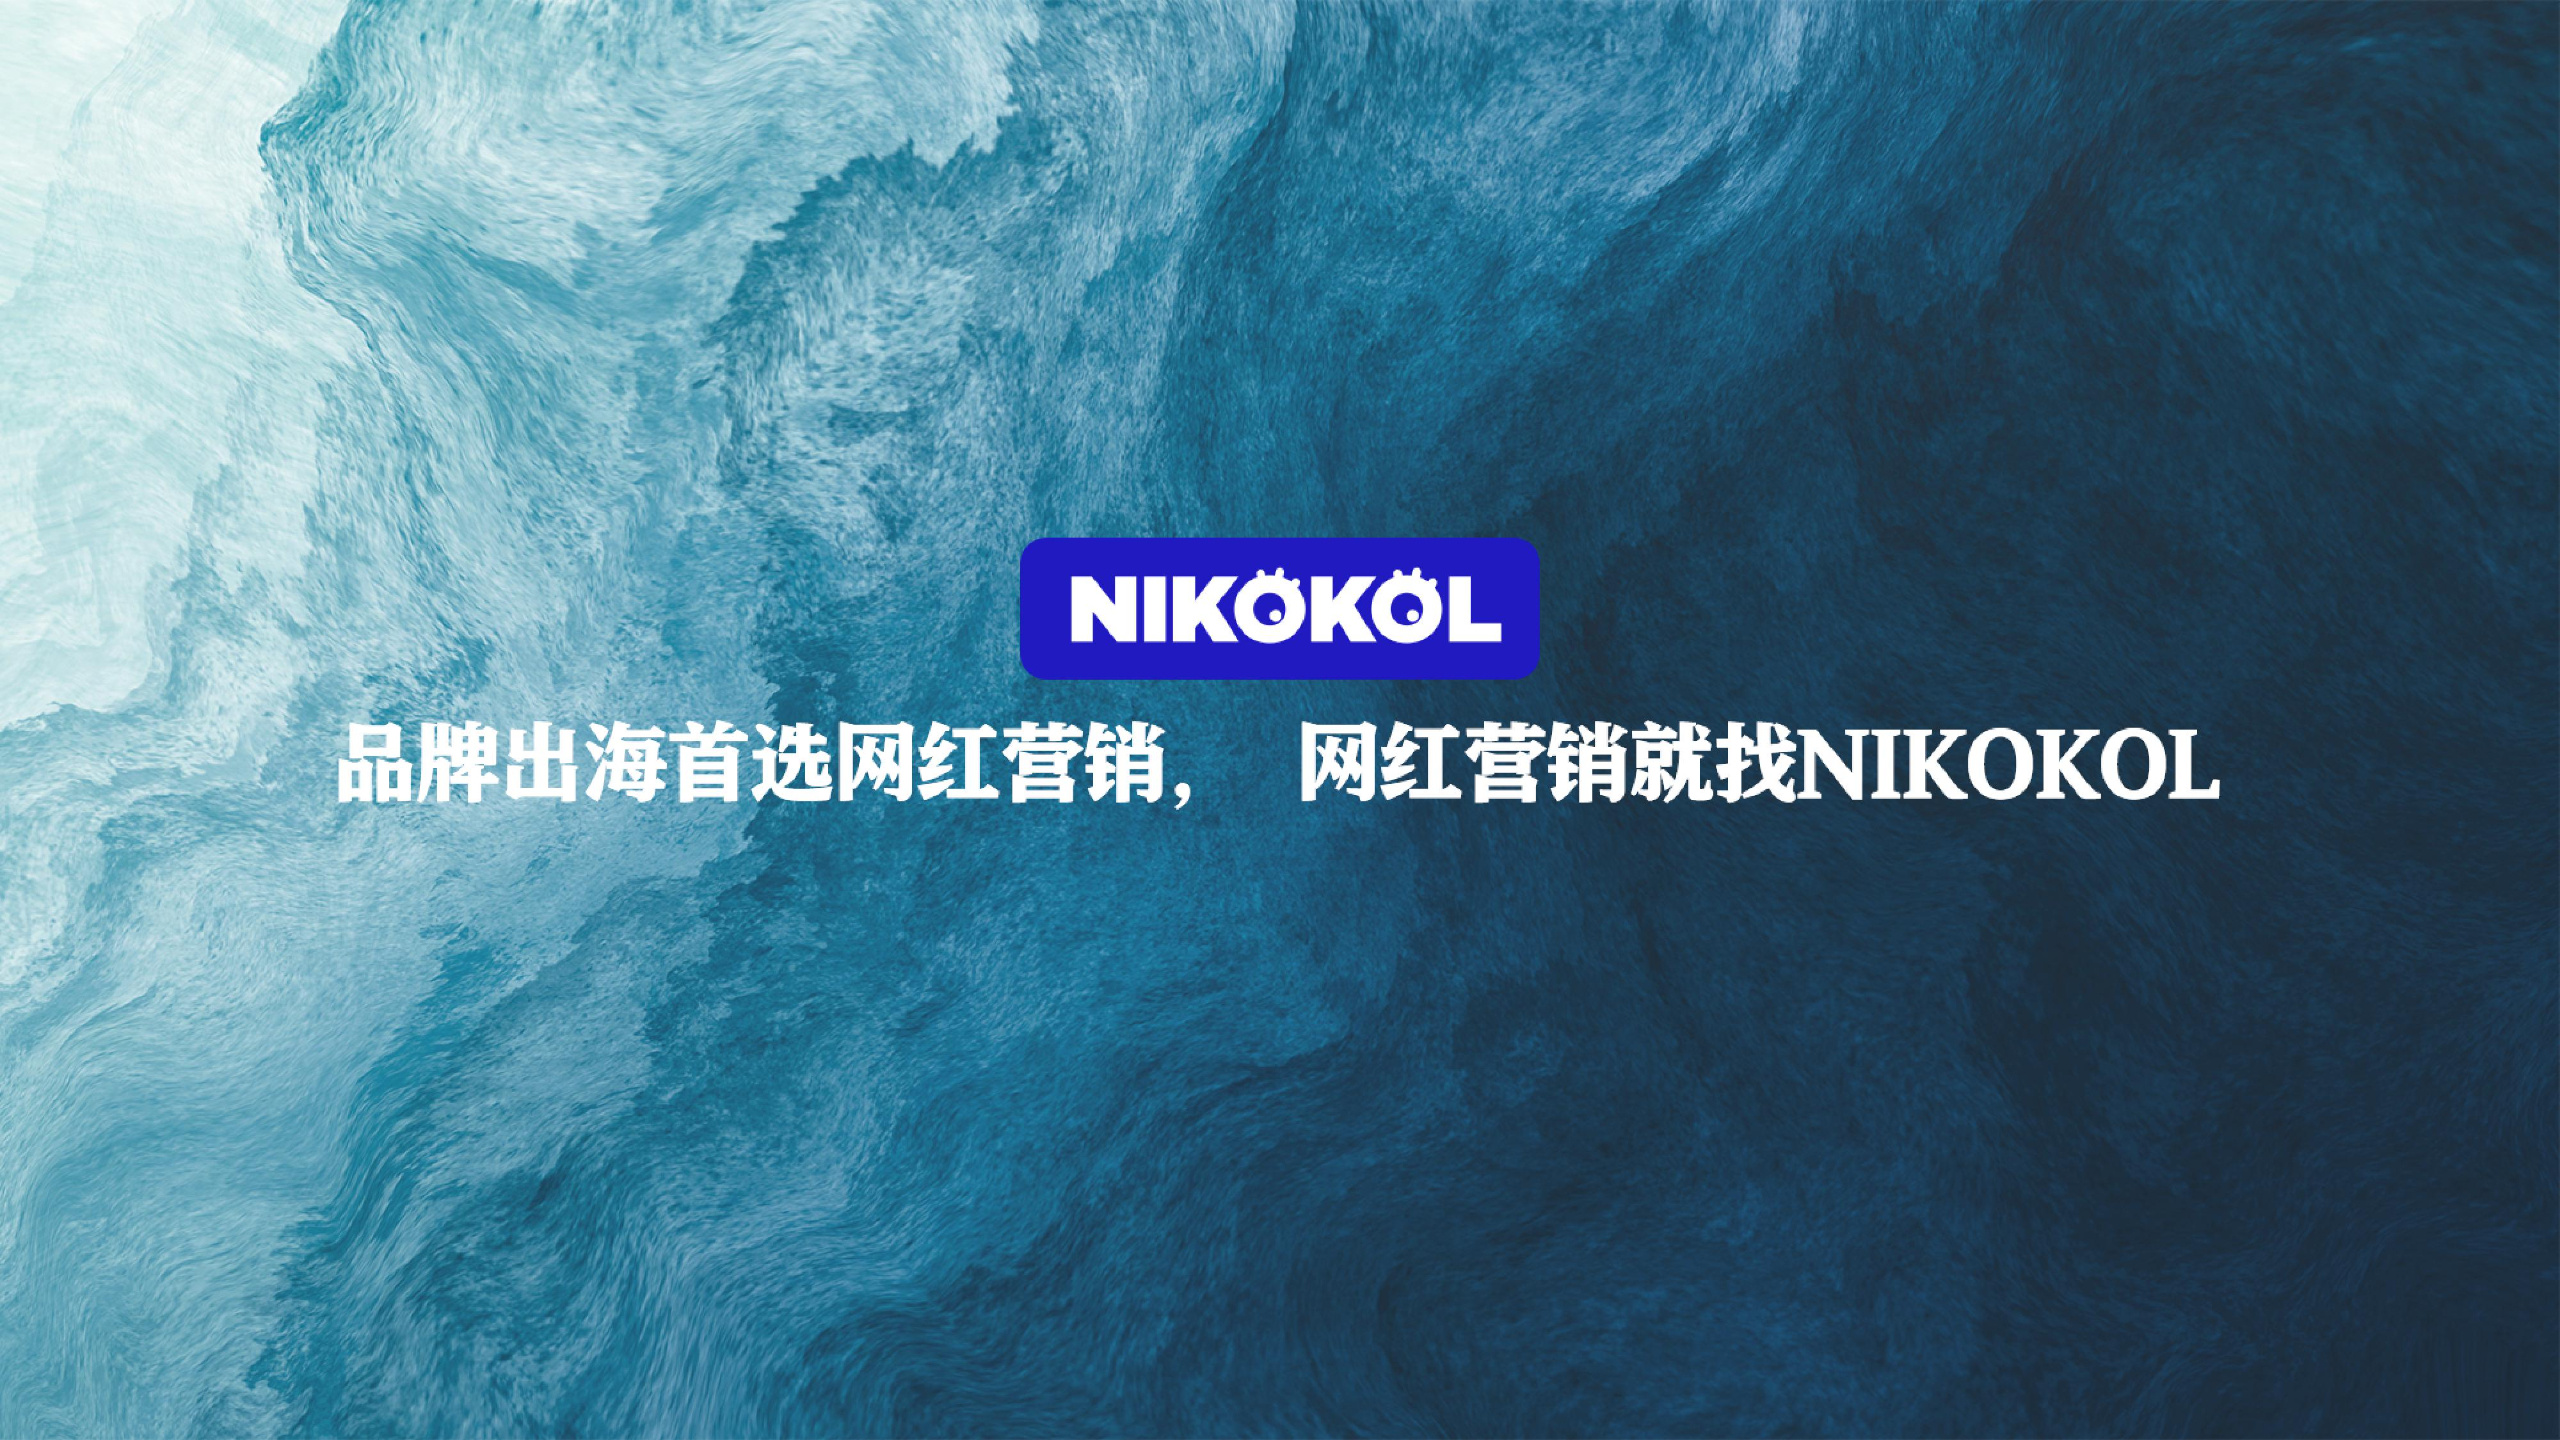 《NIKOKOL品牌营销推广》PDF下载